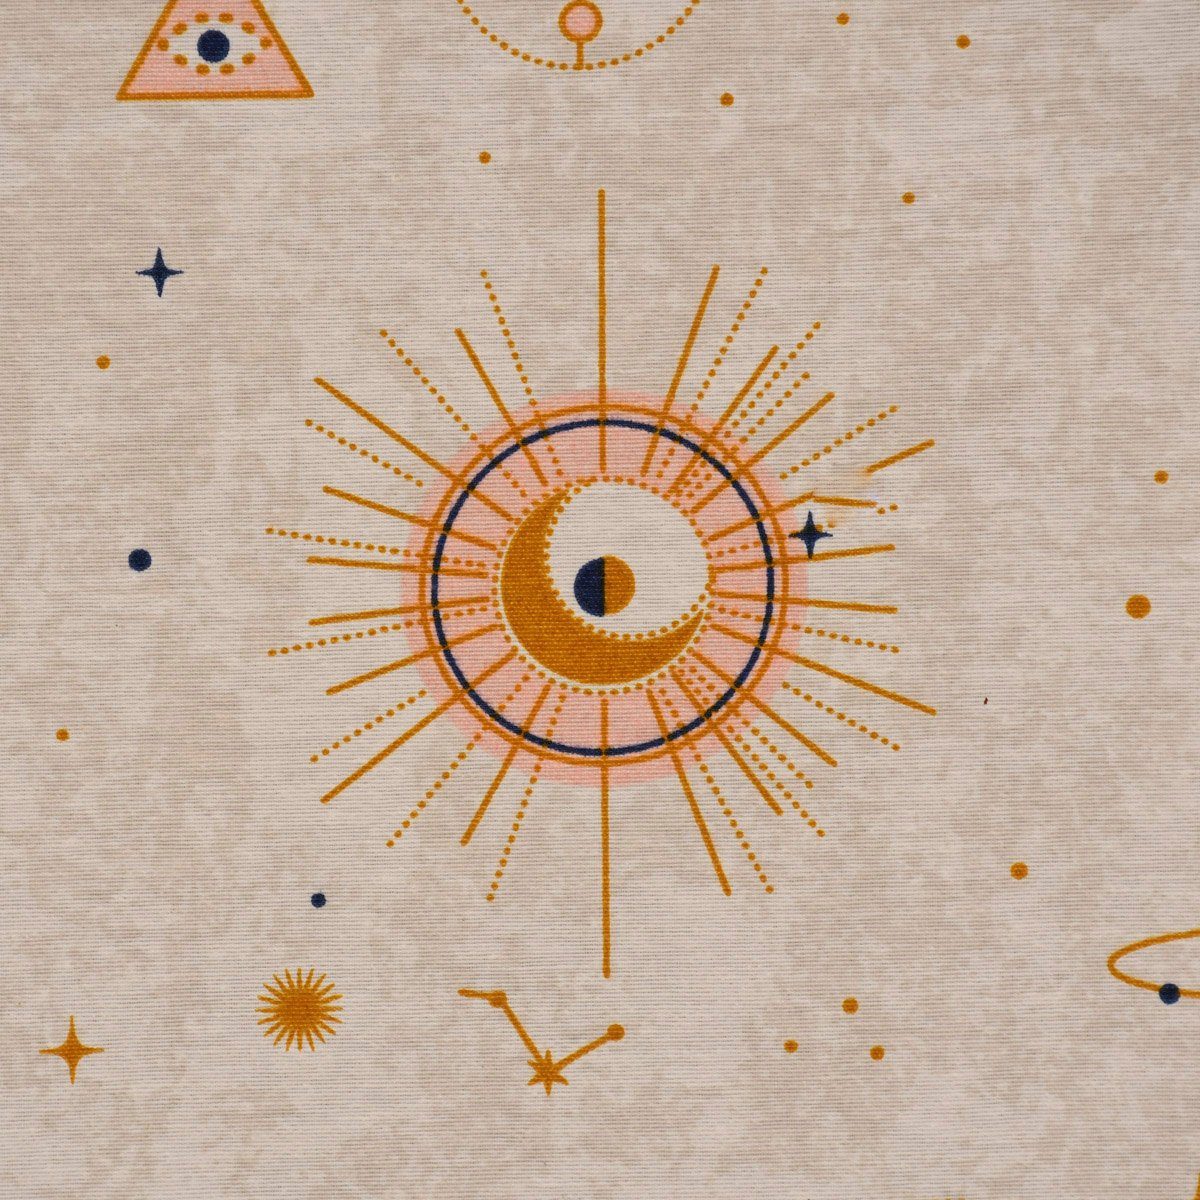 SCHÖNER LEBEN. Tischläufer Sonne Astronomie paste, Planeten handmade Tischläufer natur SCHÖNER gold LEBEN